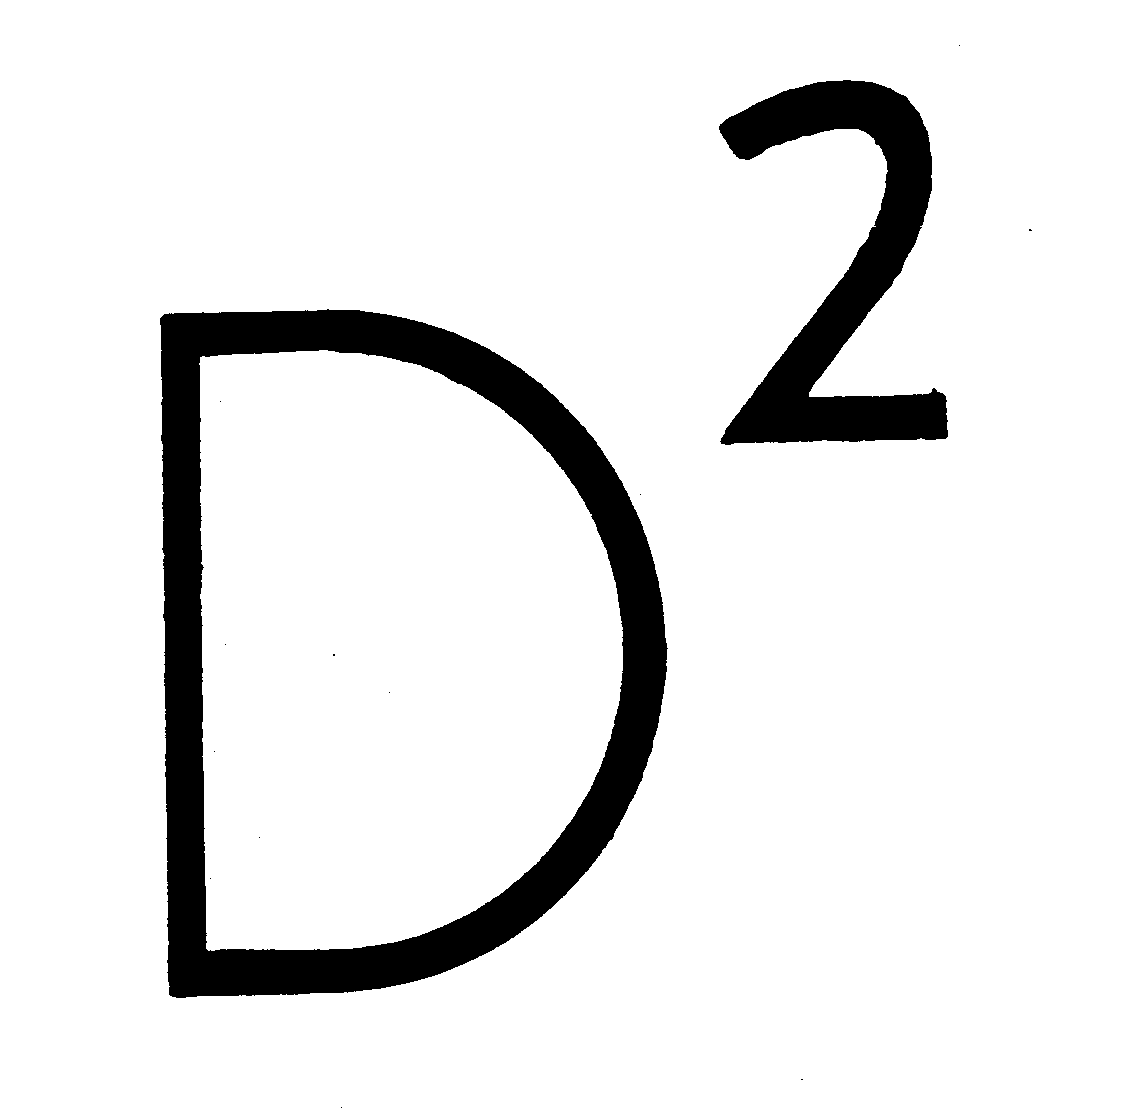  D2